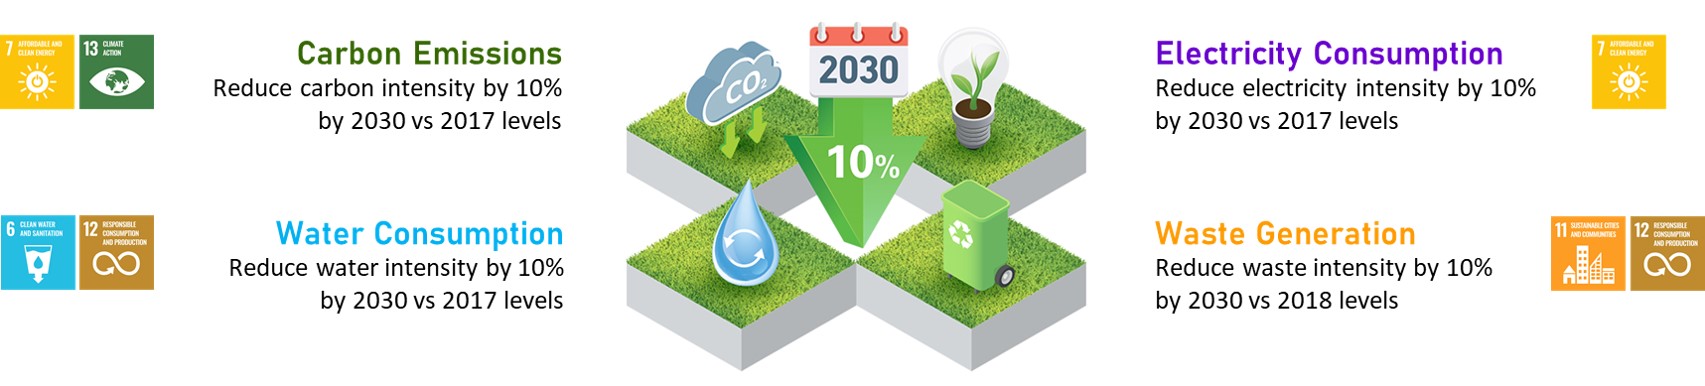 2030 Environmental Target